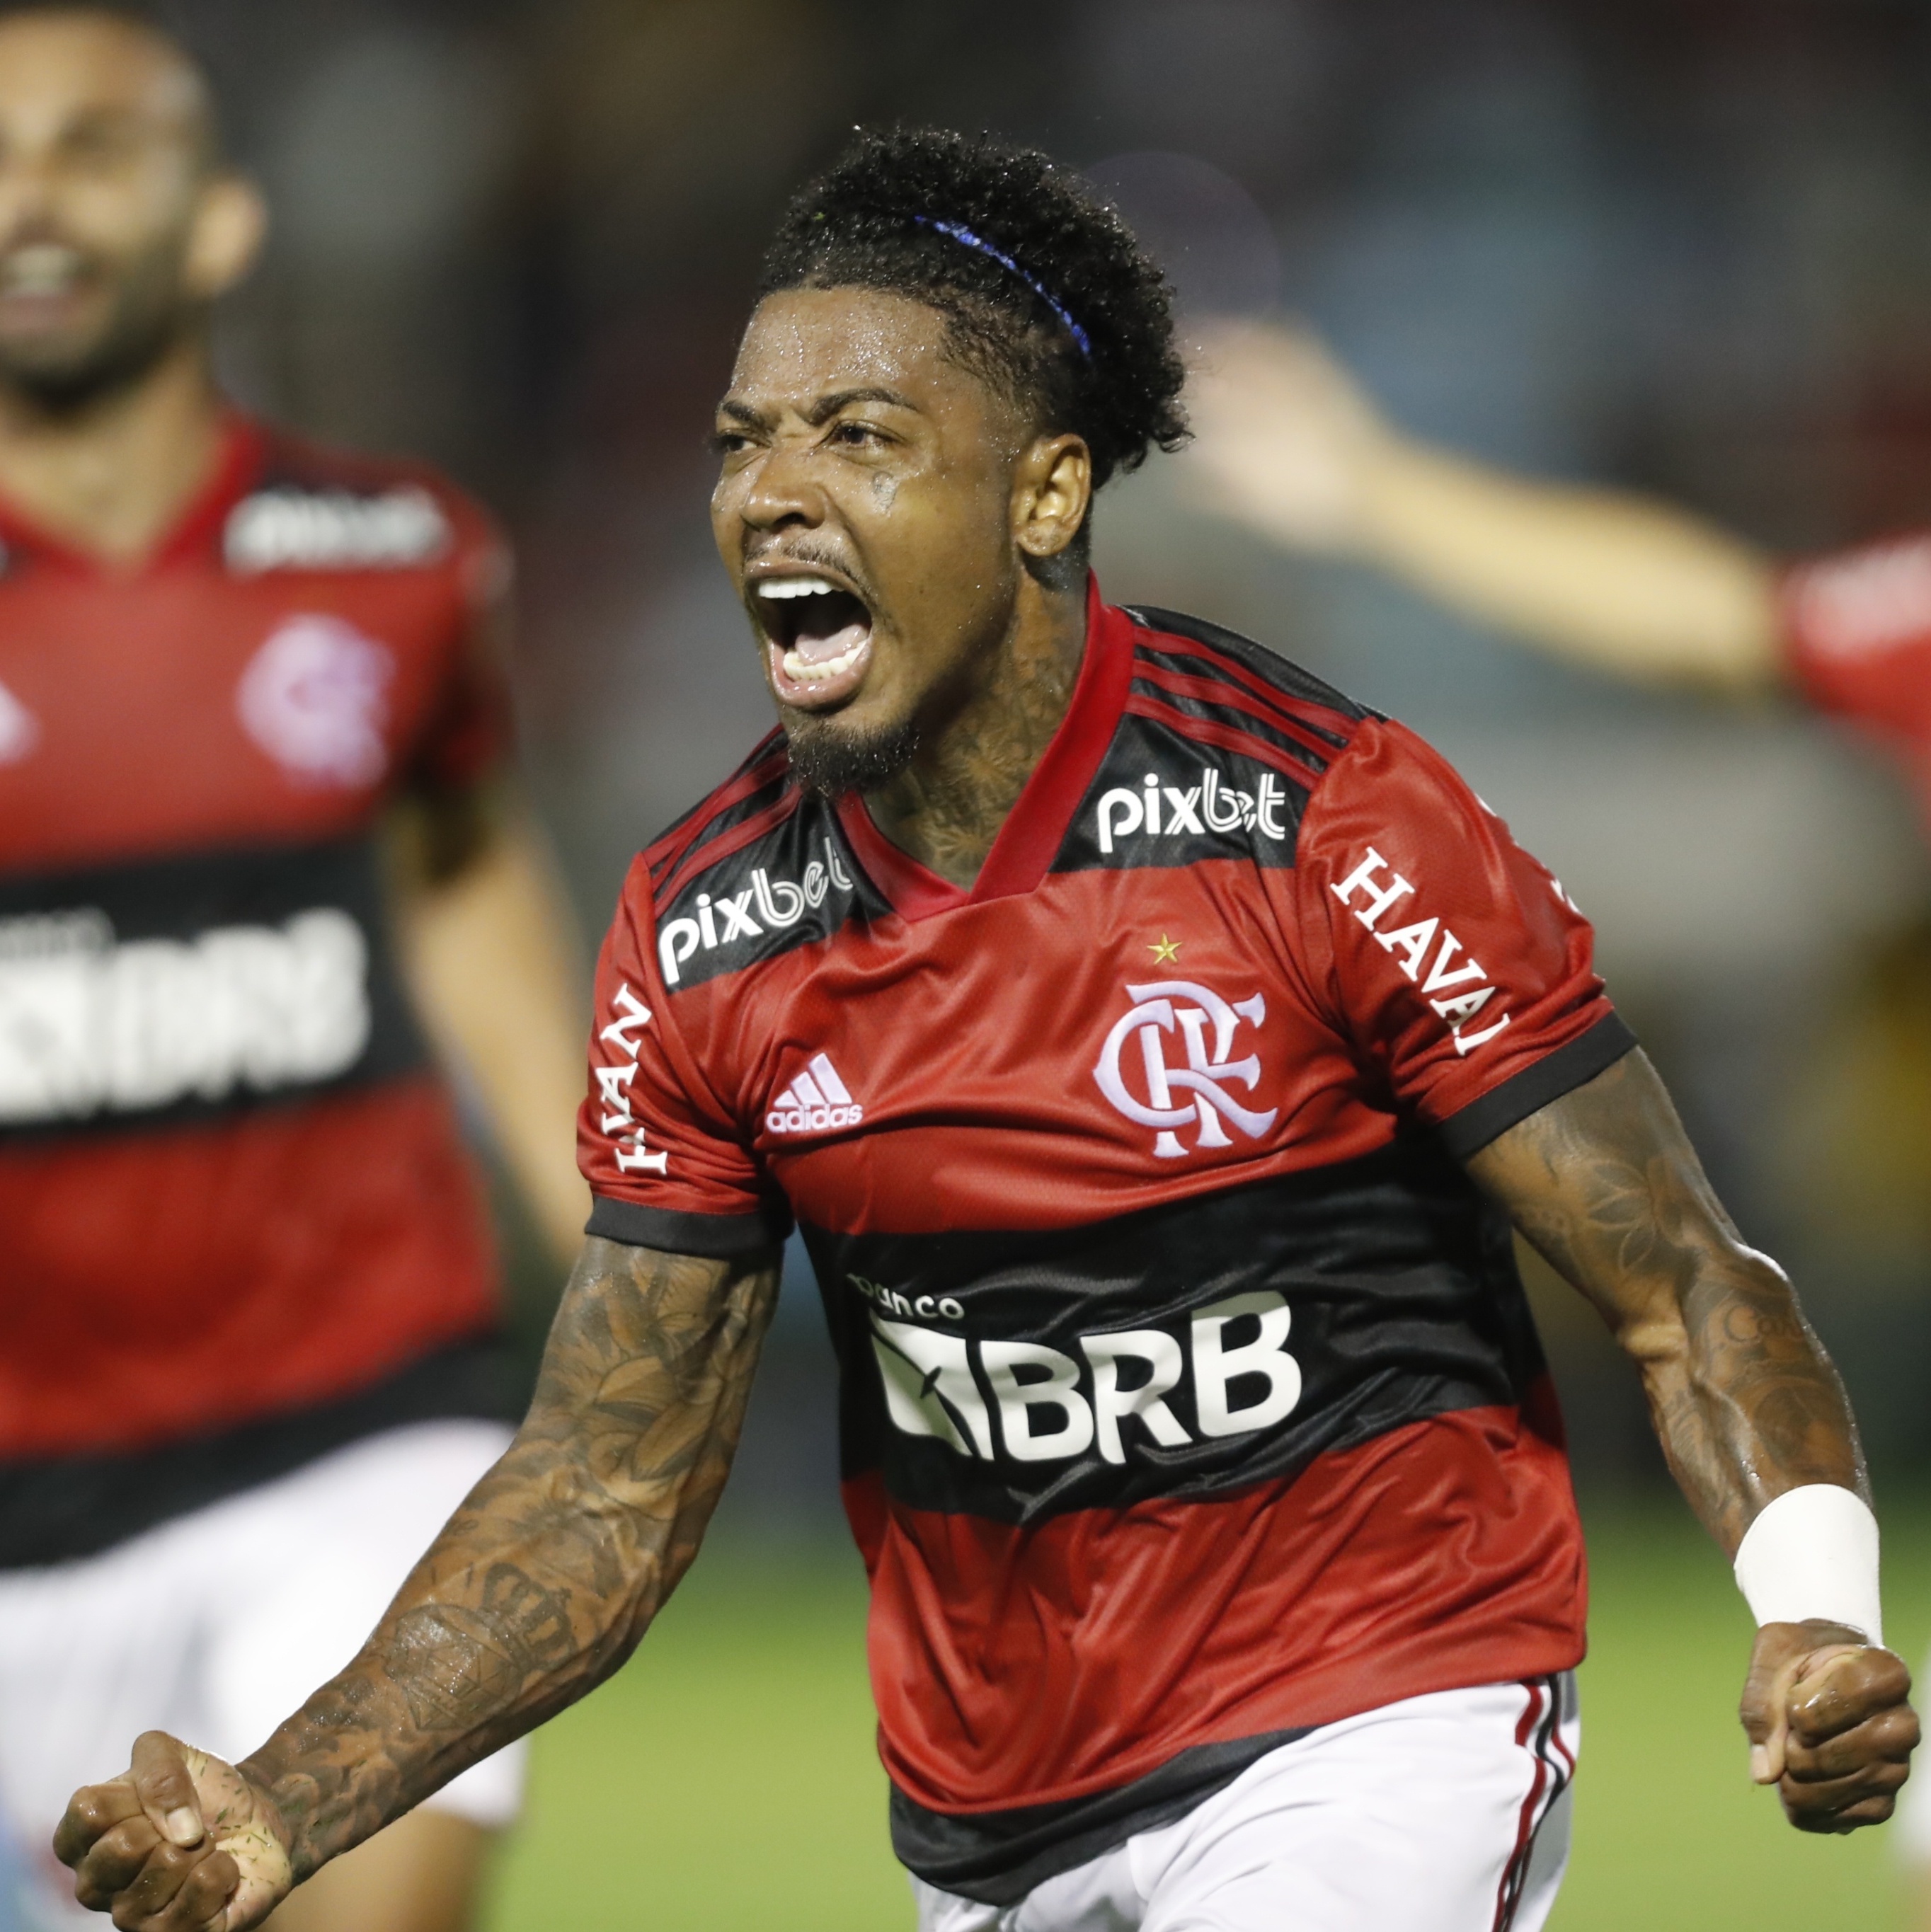 Marinho marca na estreia, e Flamengo vence em noite de Paulo Sousa - 02/02/2022 - UOL Esporte